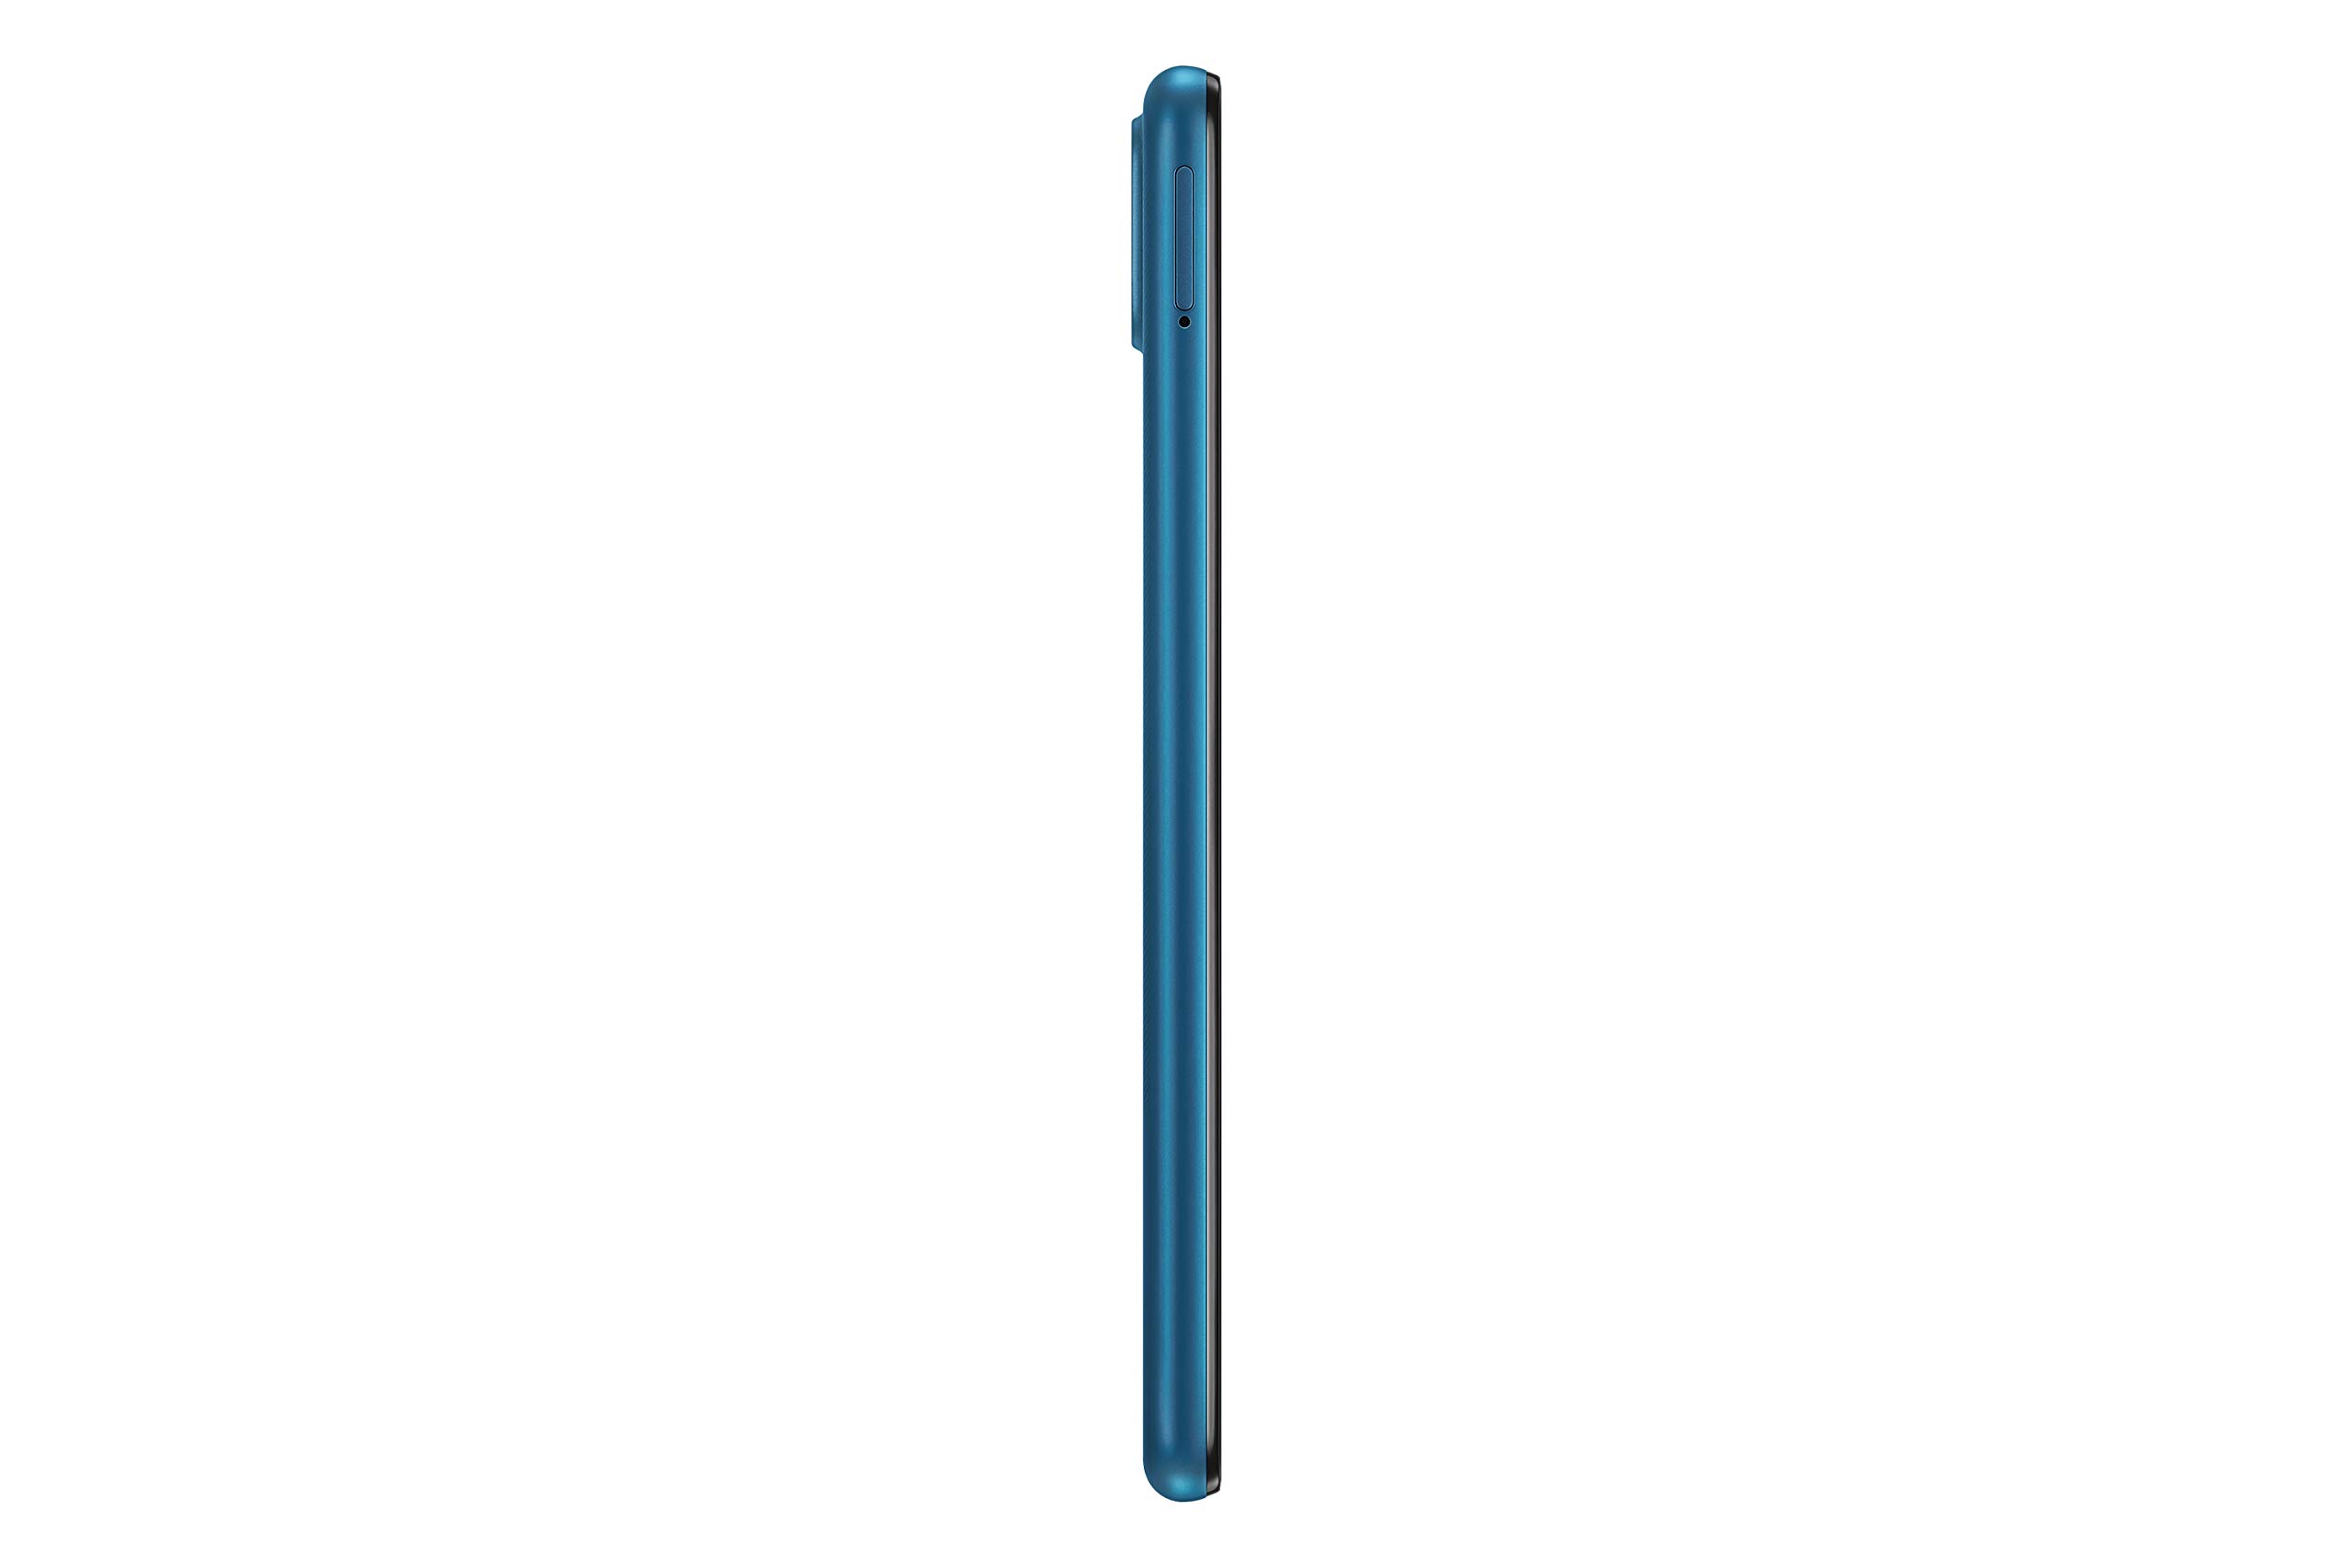 Samsung Galaxy A12 (SM-A125F/DS) Dual SIM,128 GB, Factory Unlocked GSM, International Version - No Warranty - Blue